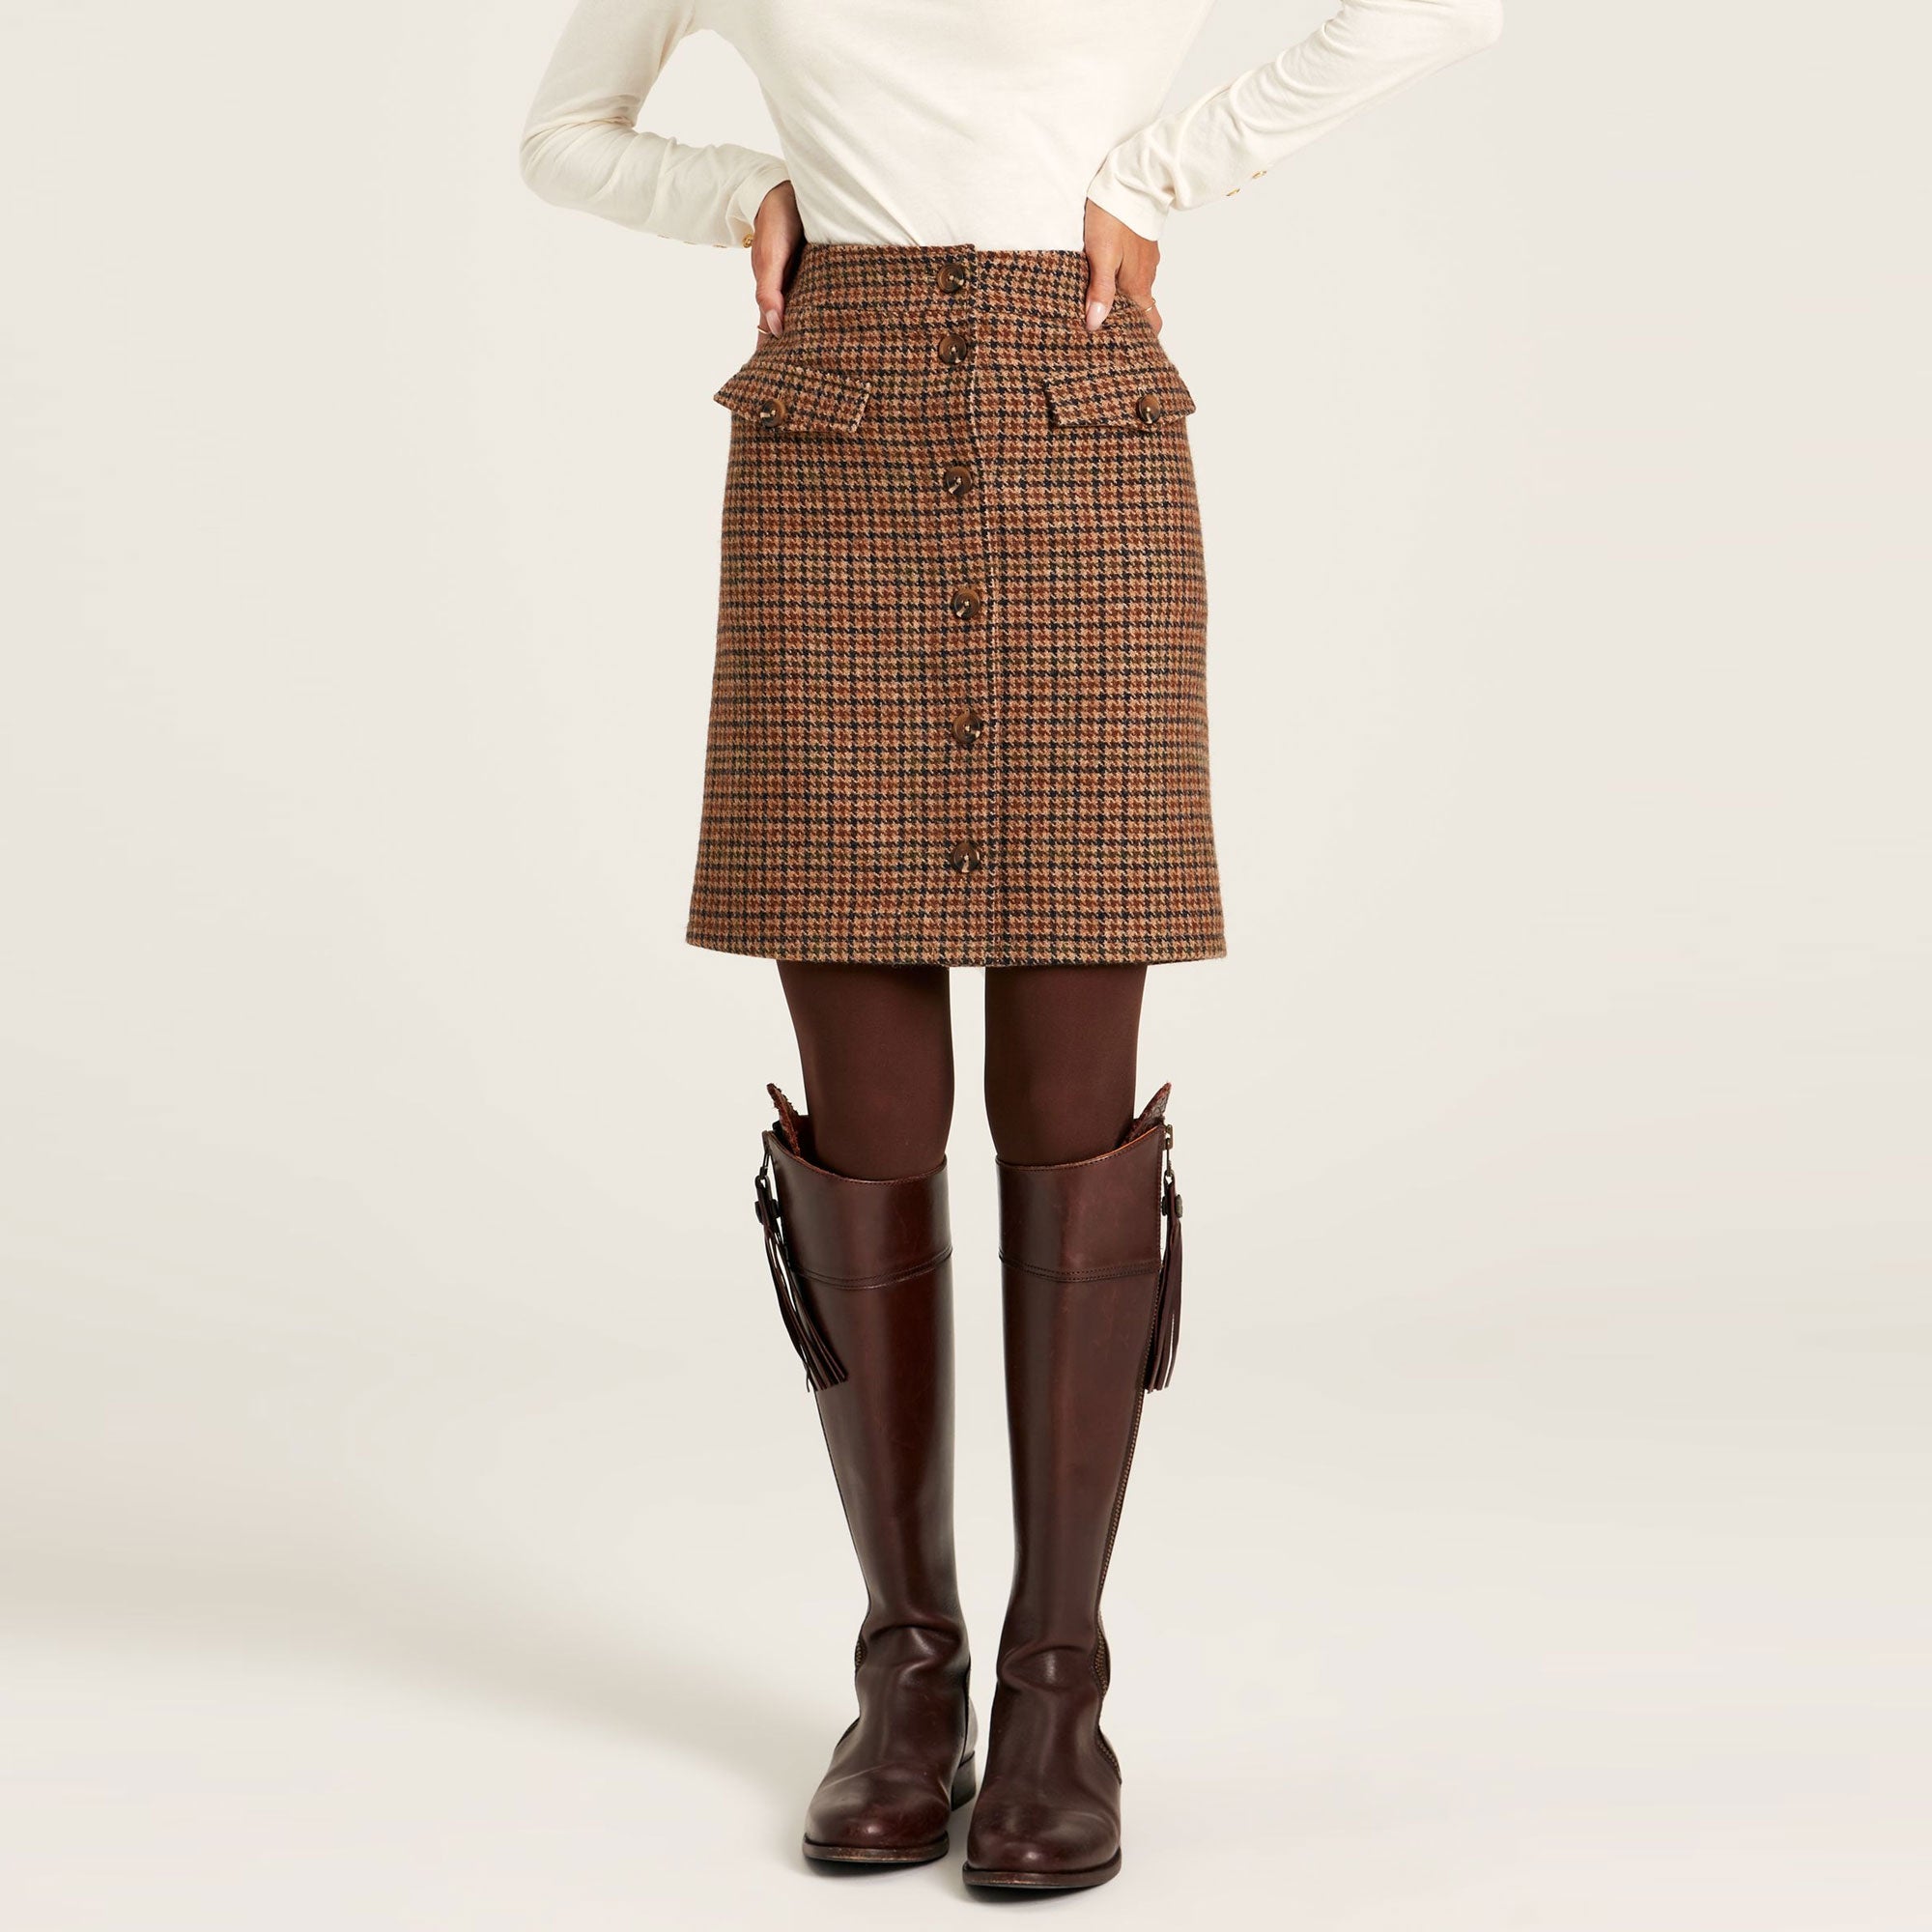 Las mejores ofertas en Faldas y faldas short Joules para Niñas | eBay